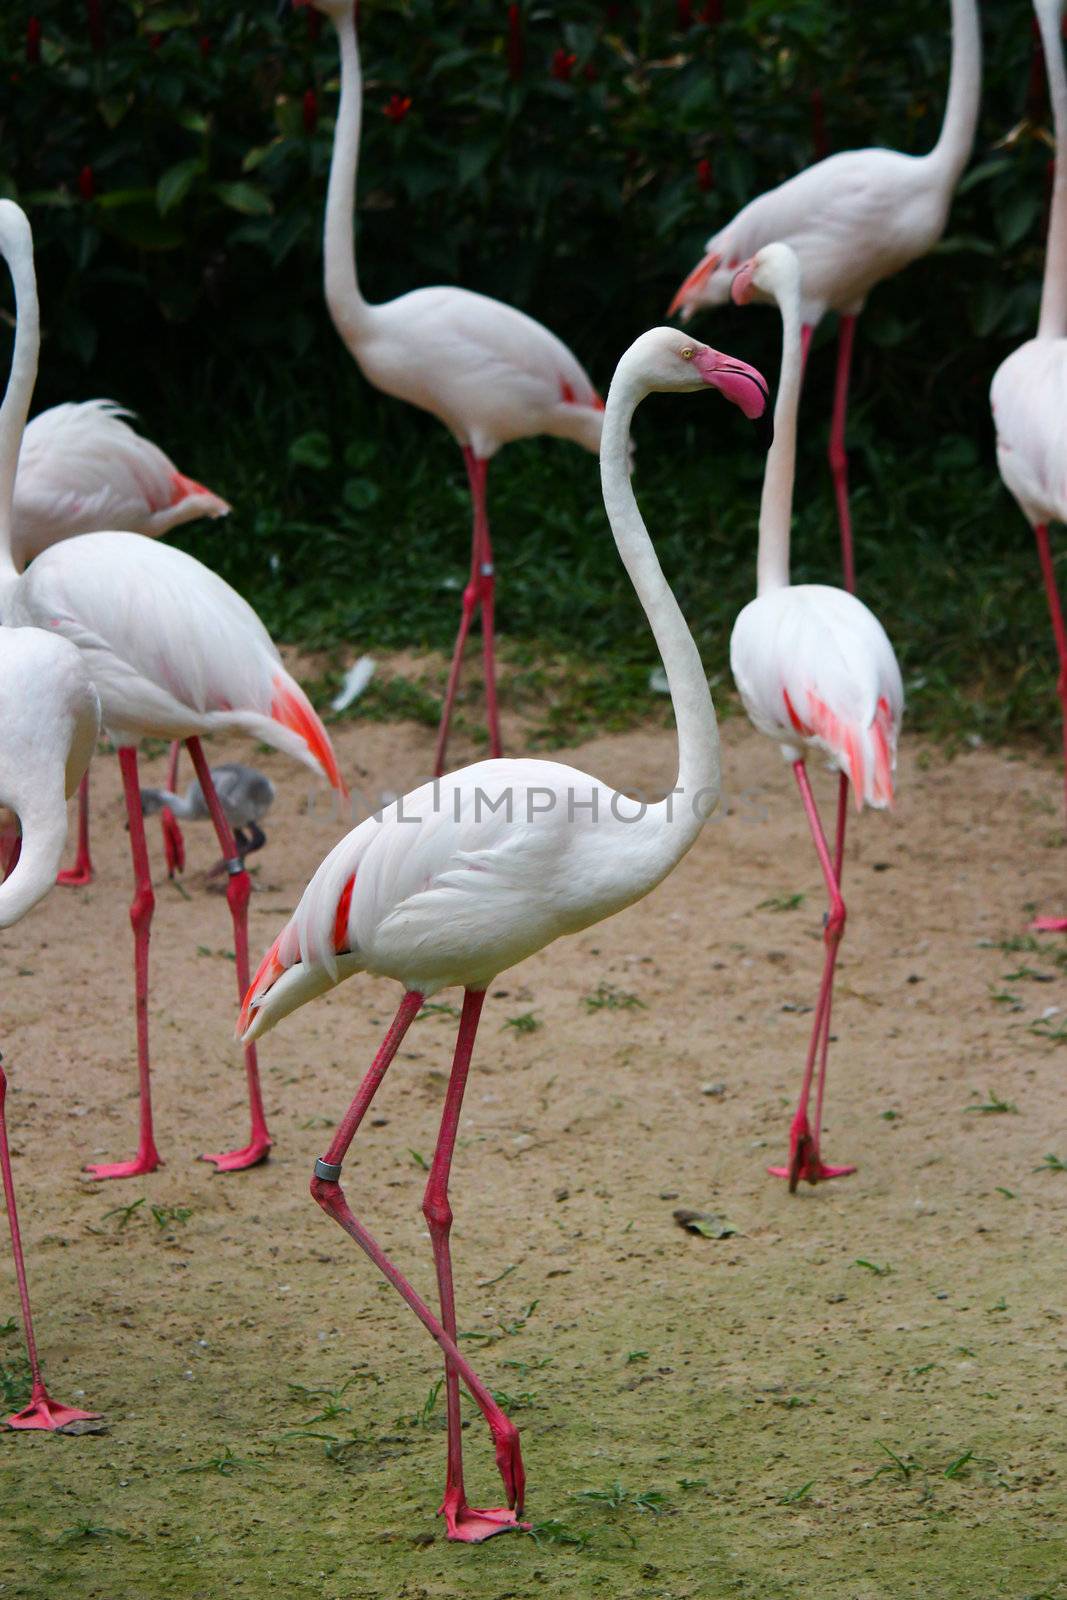 Greater Flamingo(Phoenicopterus roseus)